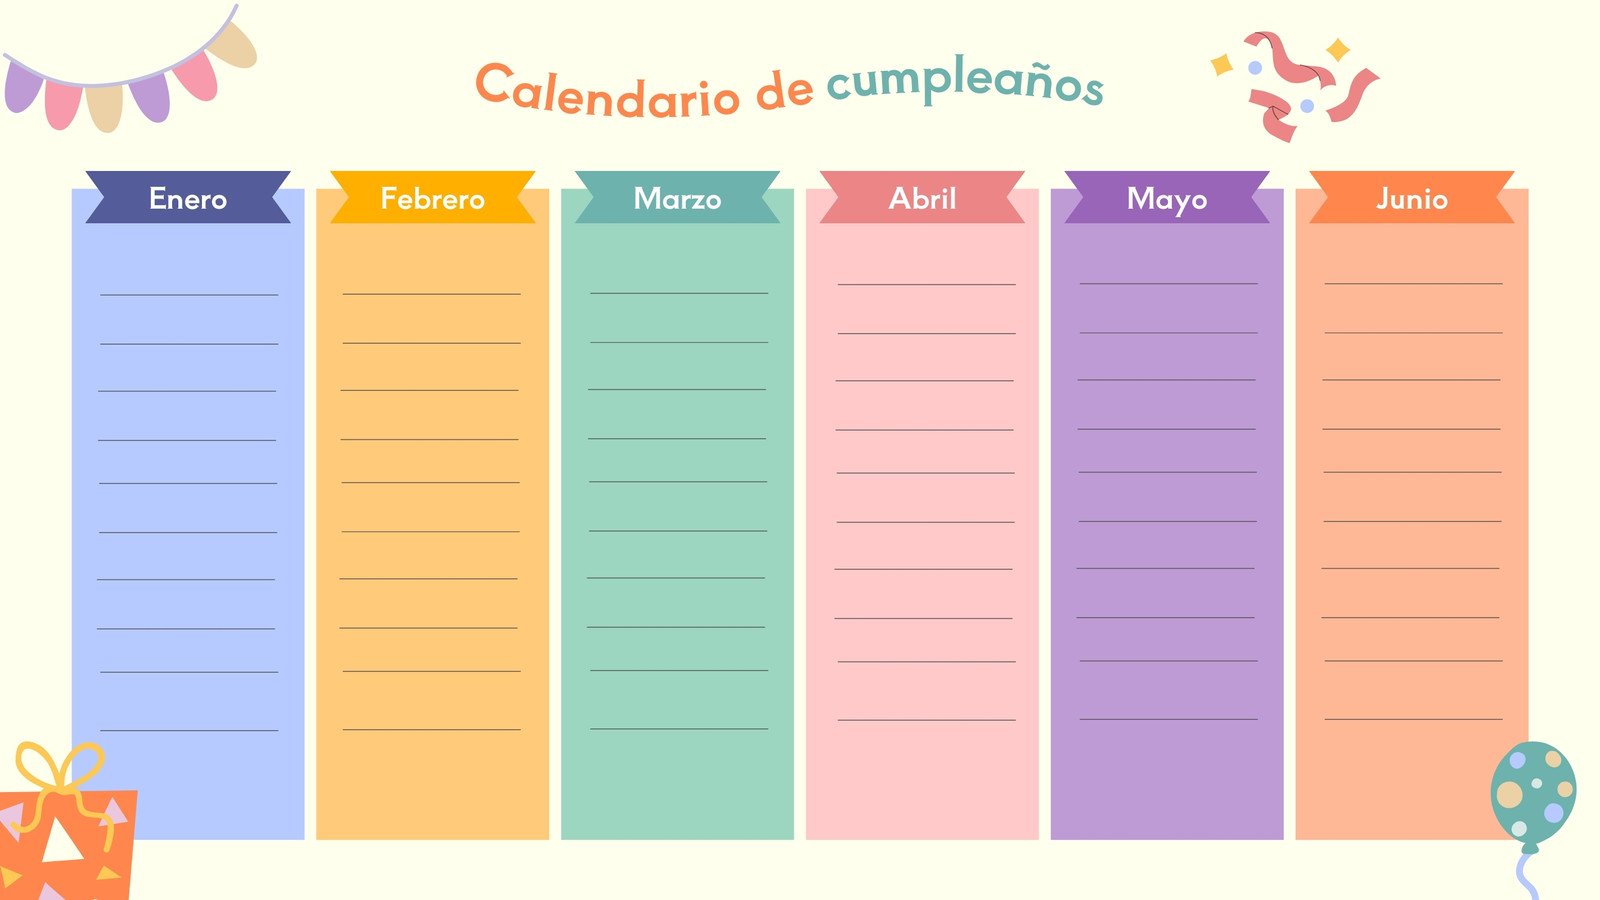 Calendario de cumpleaños infantil colorido 